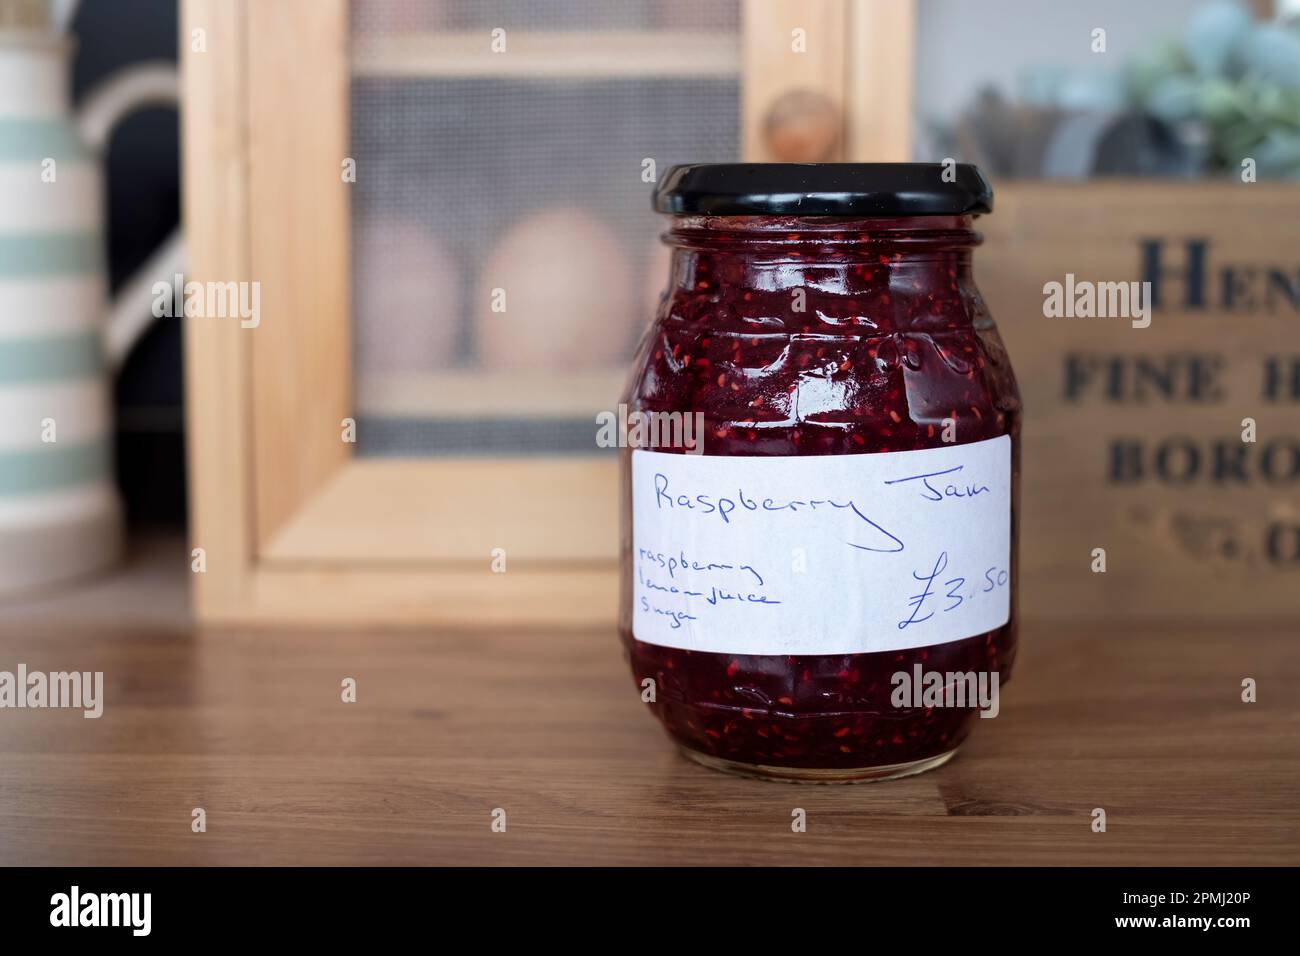 Ein Glas hausgemachter Himbeermarmelade. Der Mixbecher verfügt über ein handgeschriebenes Etikett, auf dem die Zutaten und der Preis der Marmelade aufgeführt sind. Stockfoto